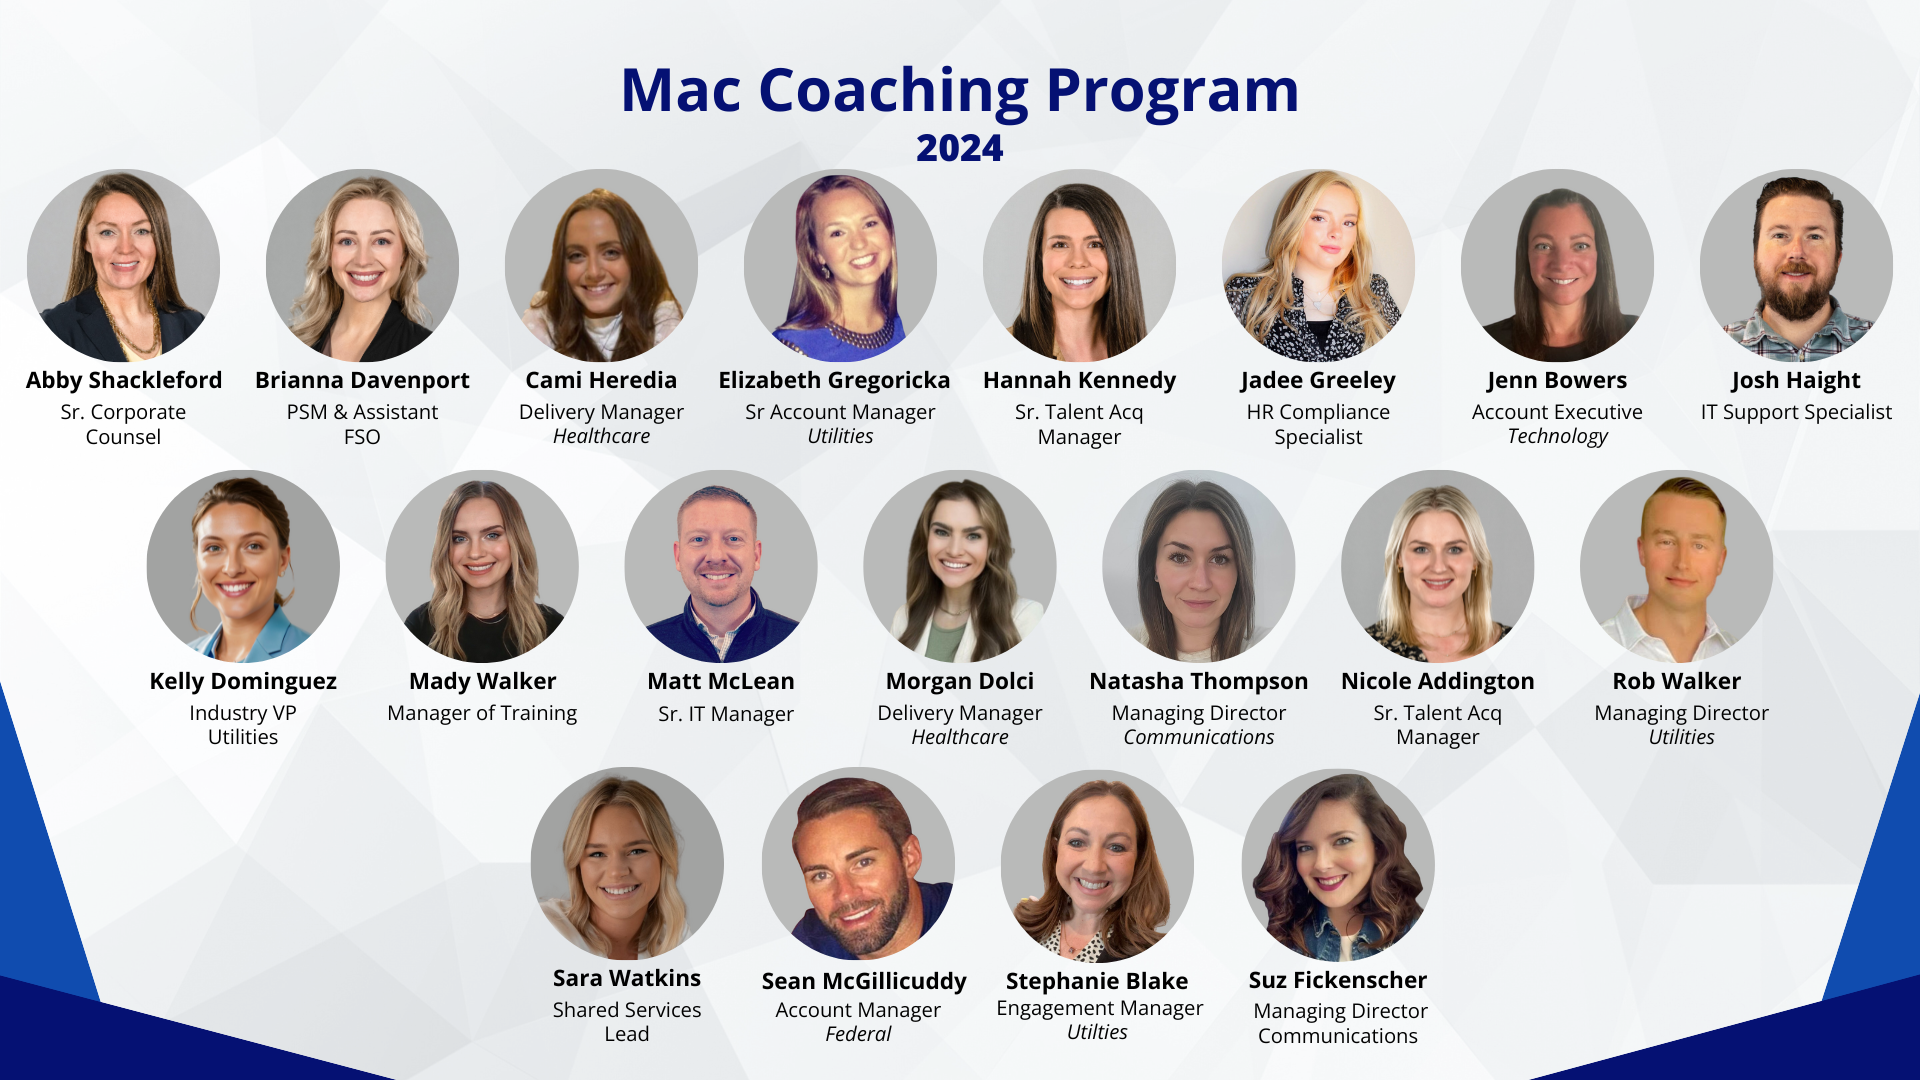 Employee headshots of 2024 MAC Coaching Program participants